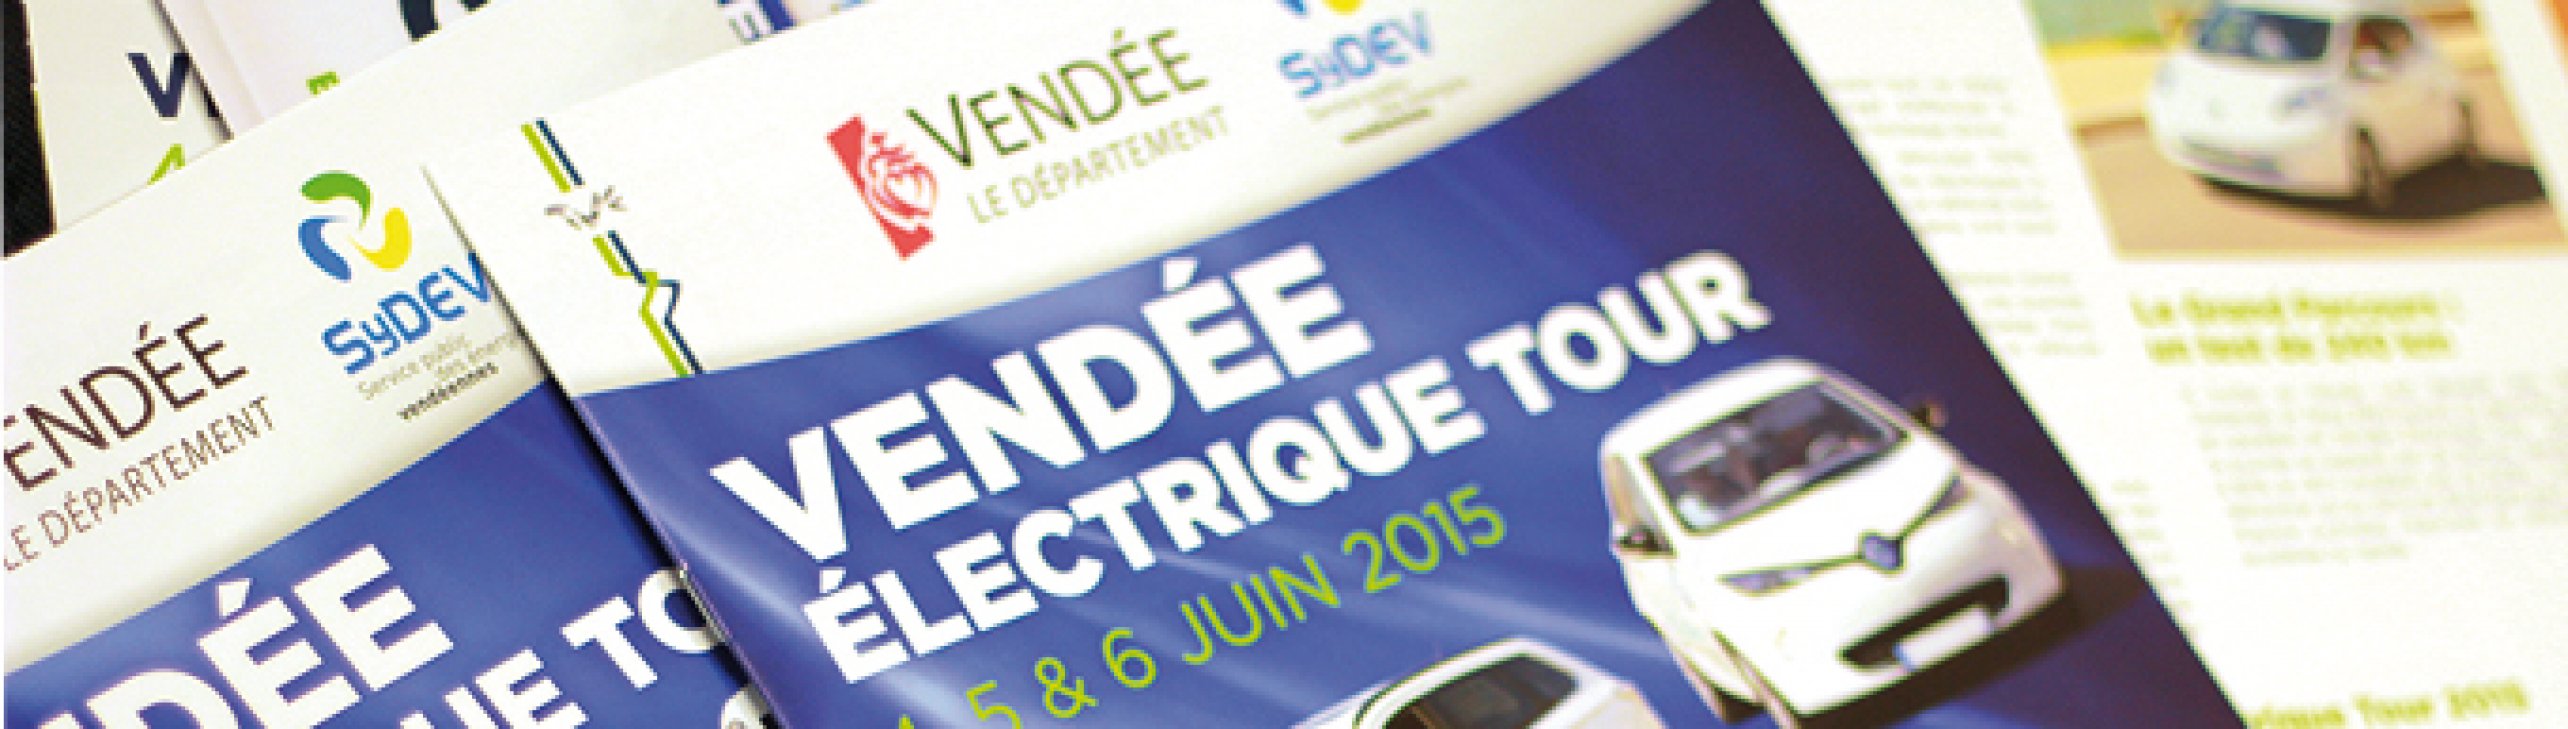 TVE - Catalogue Vendee electrique tour 2015